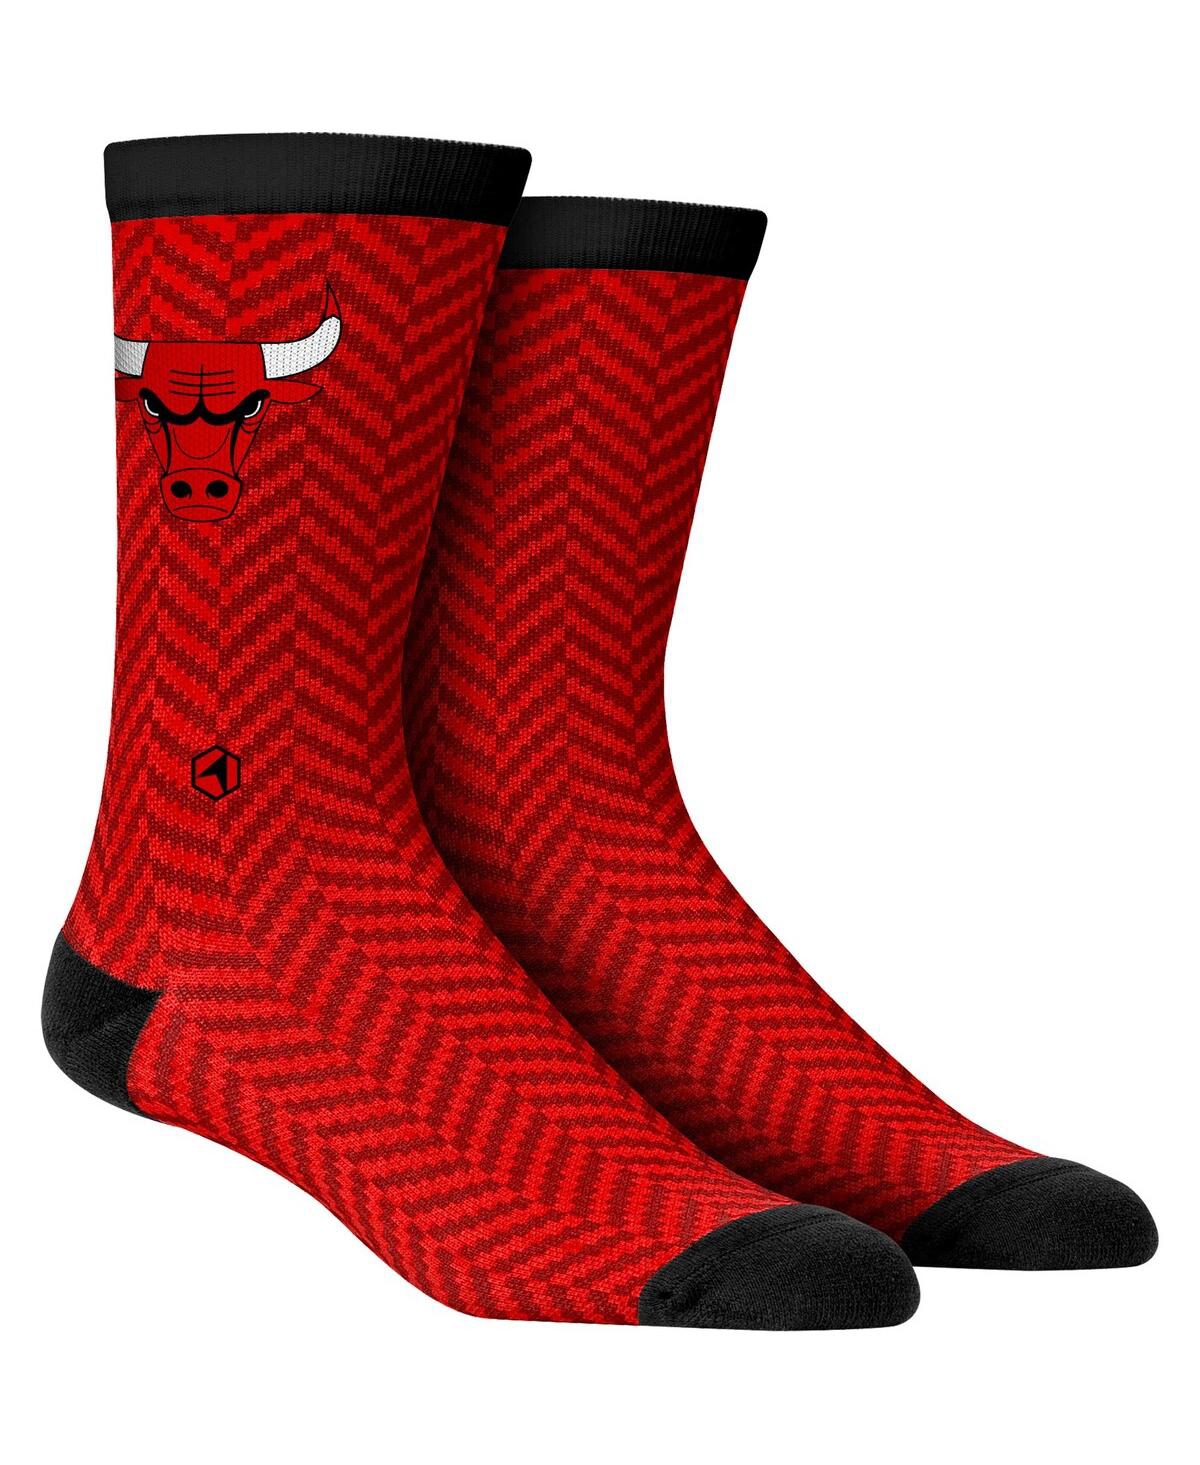 Men's Rock Em Socks Chicago Bulls Herringbone Dress Socks - Multi